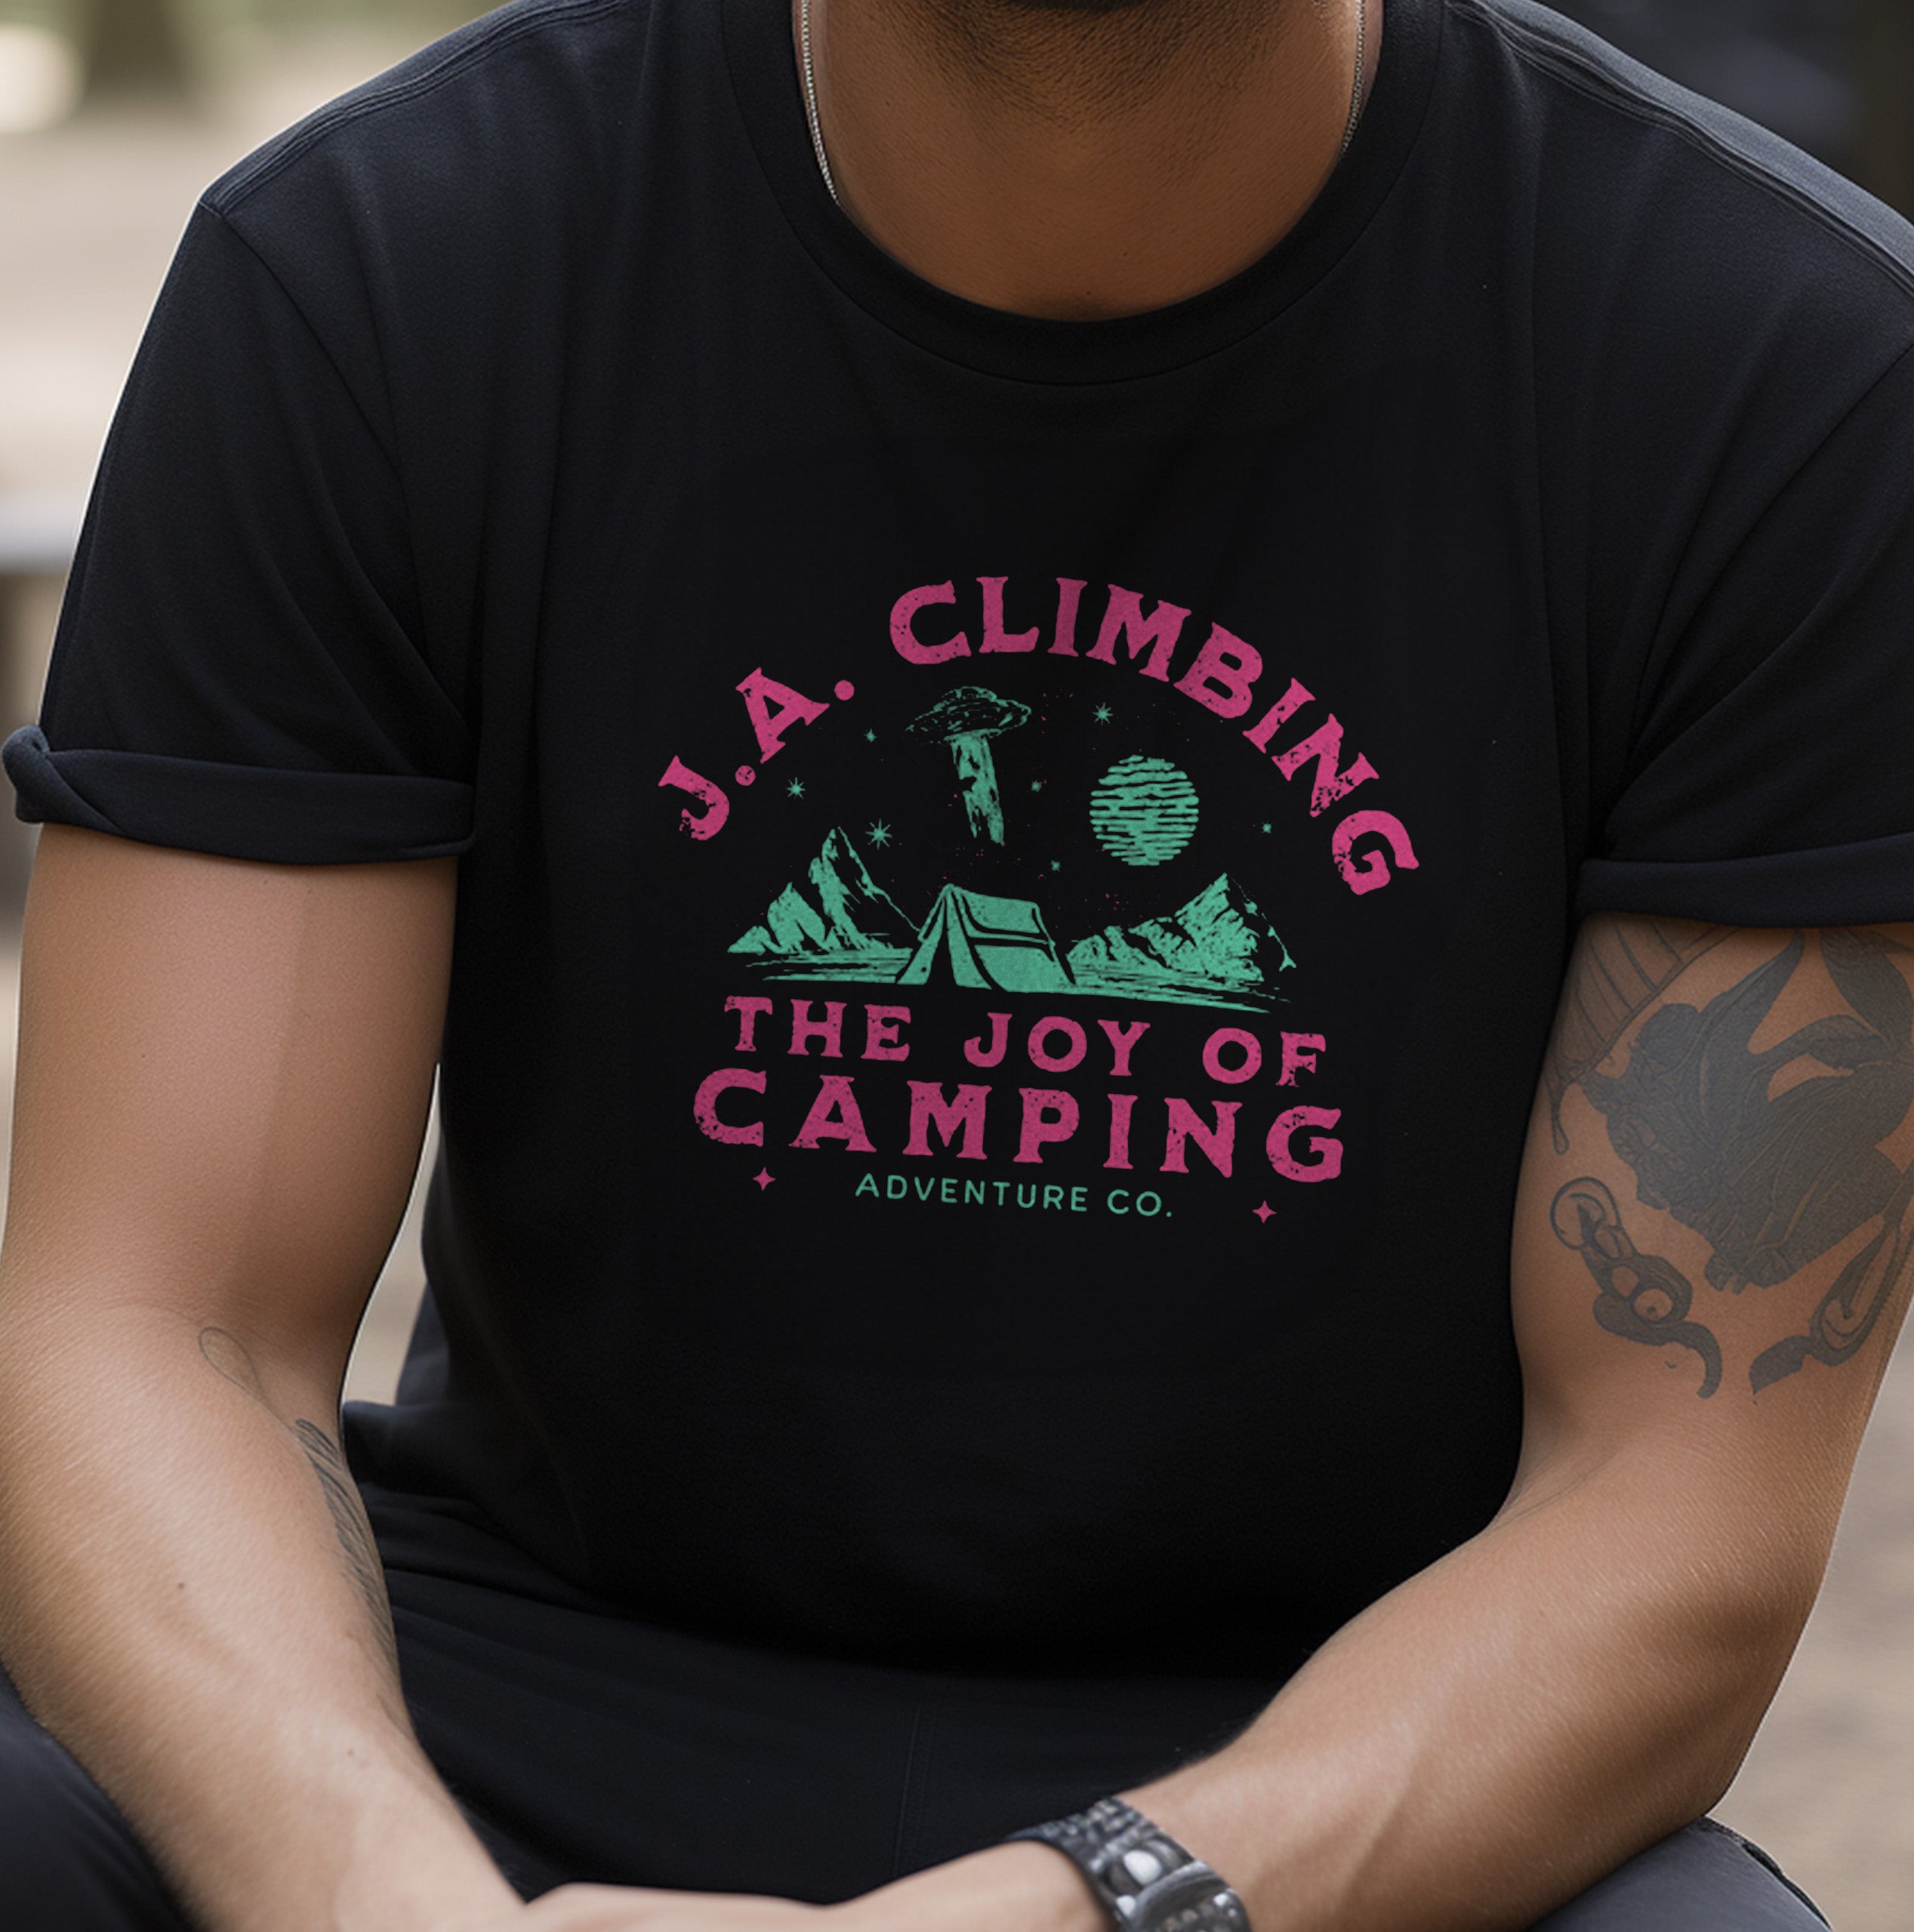 The Joy Of Camping Rock Climbing Shirt Men's Woman's Close-Up